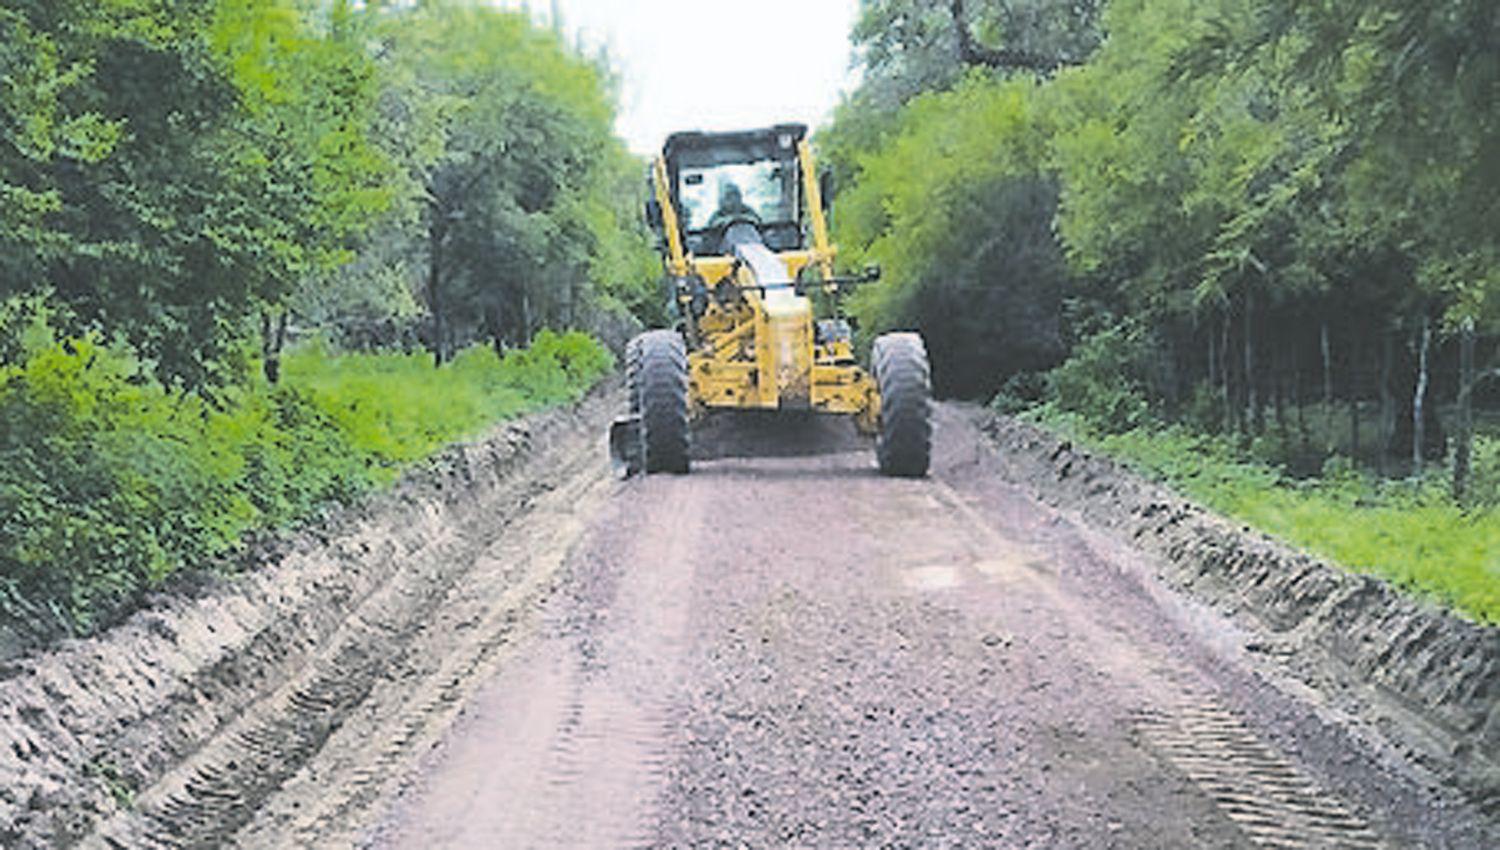 Comenzaron trabajos para el enripiado de 12 kiloacutemetros de caminos en la zona de Antajeacute